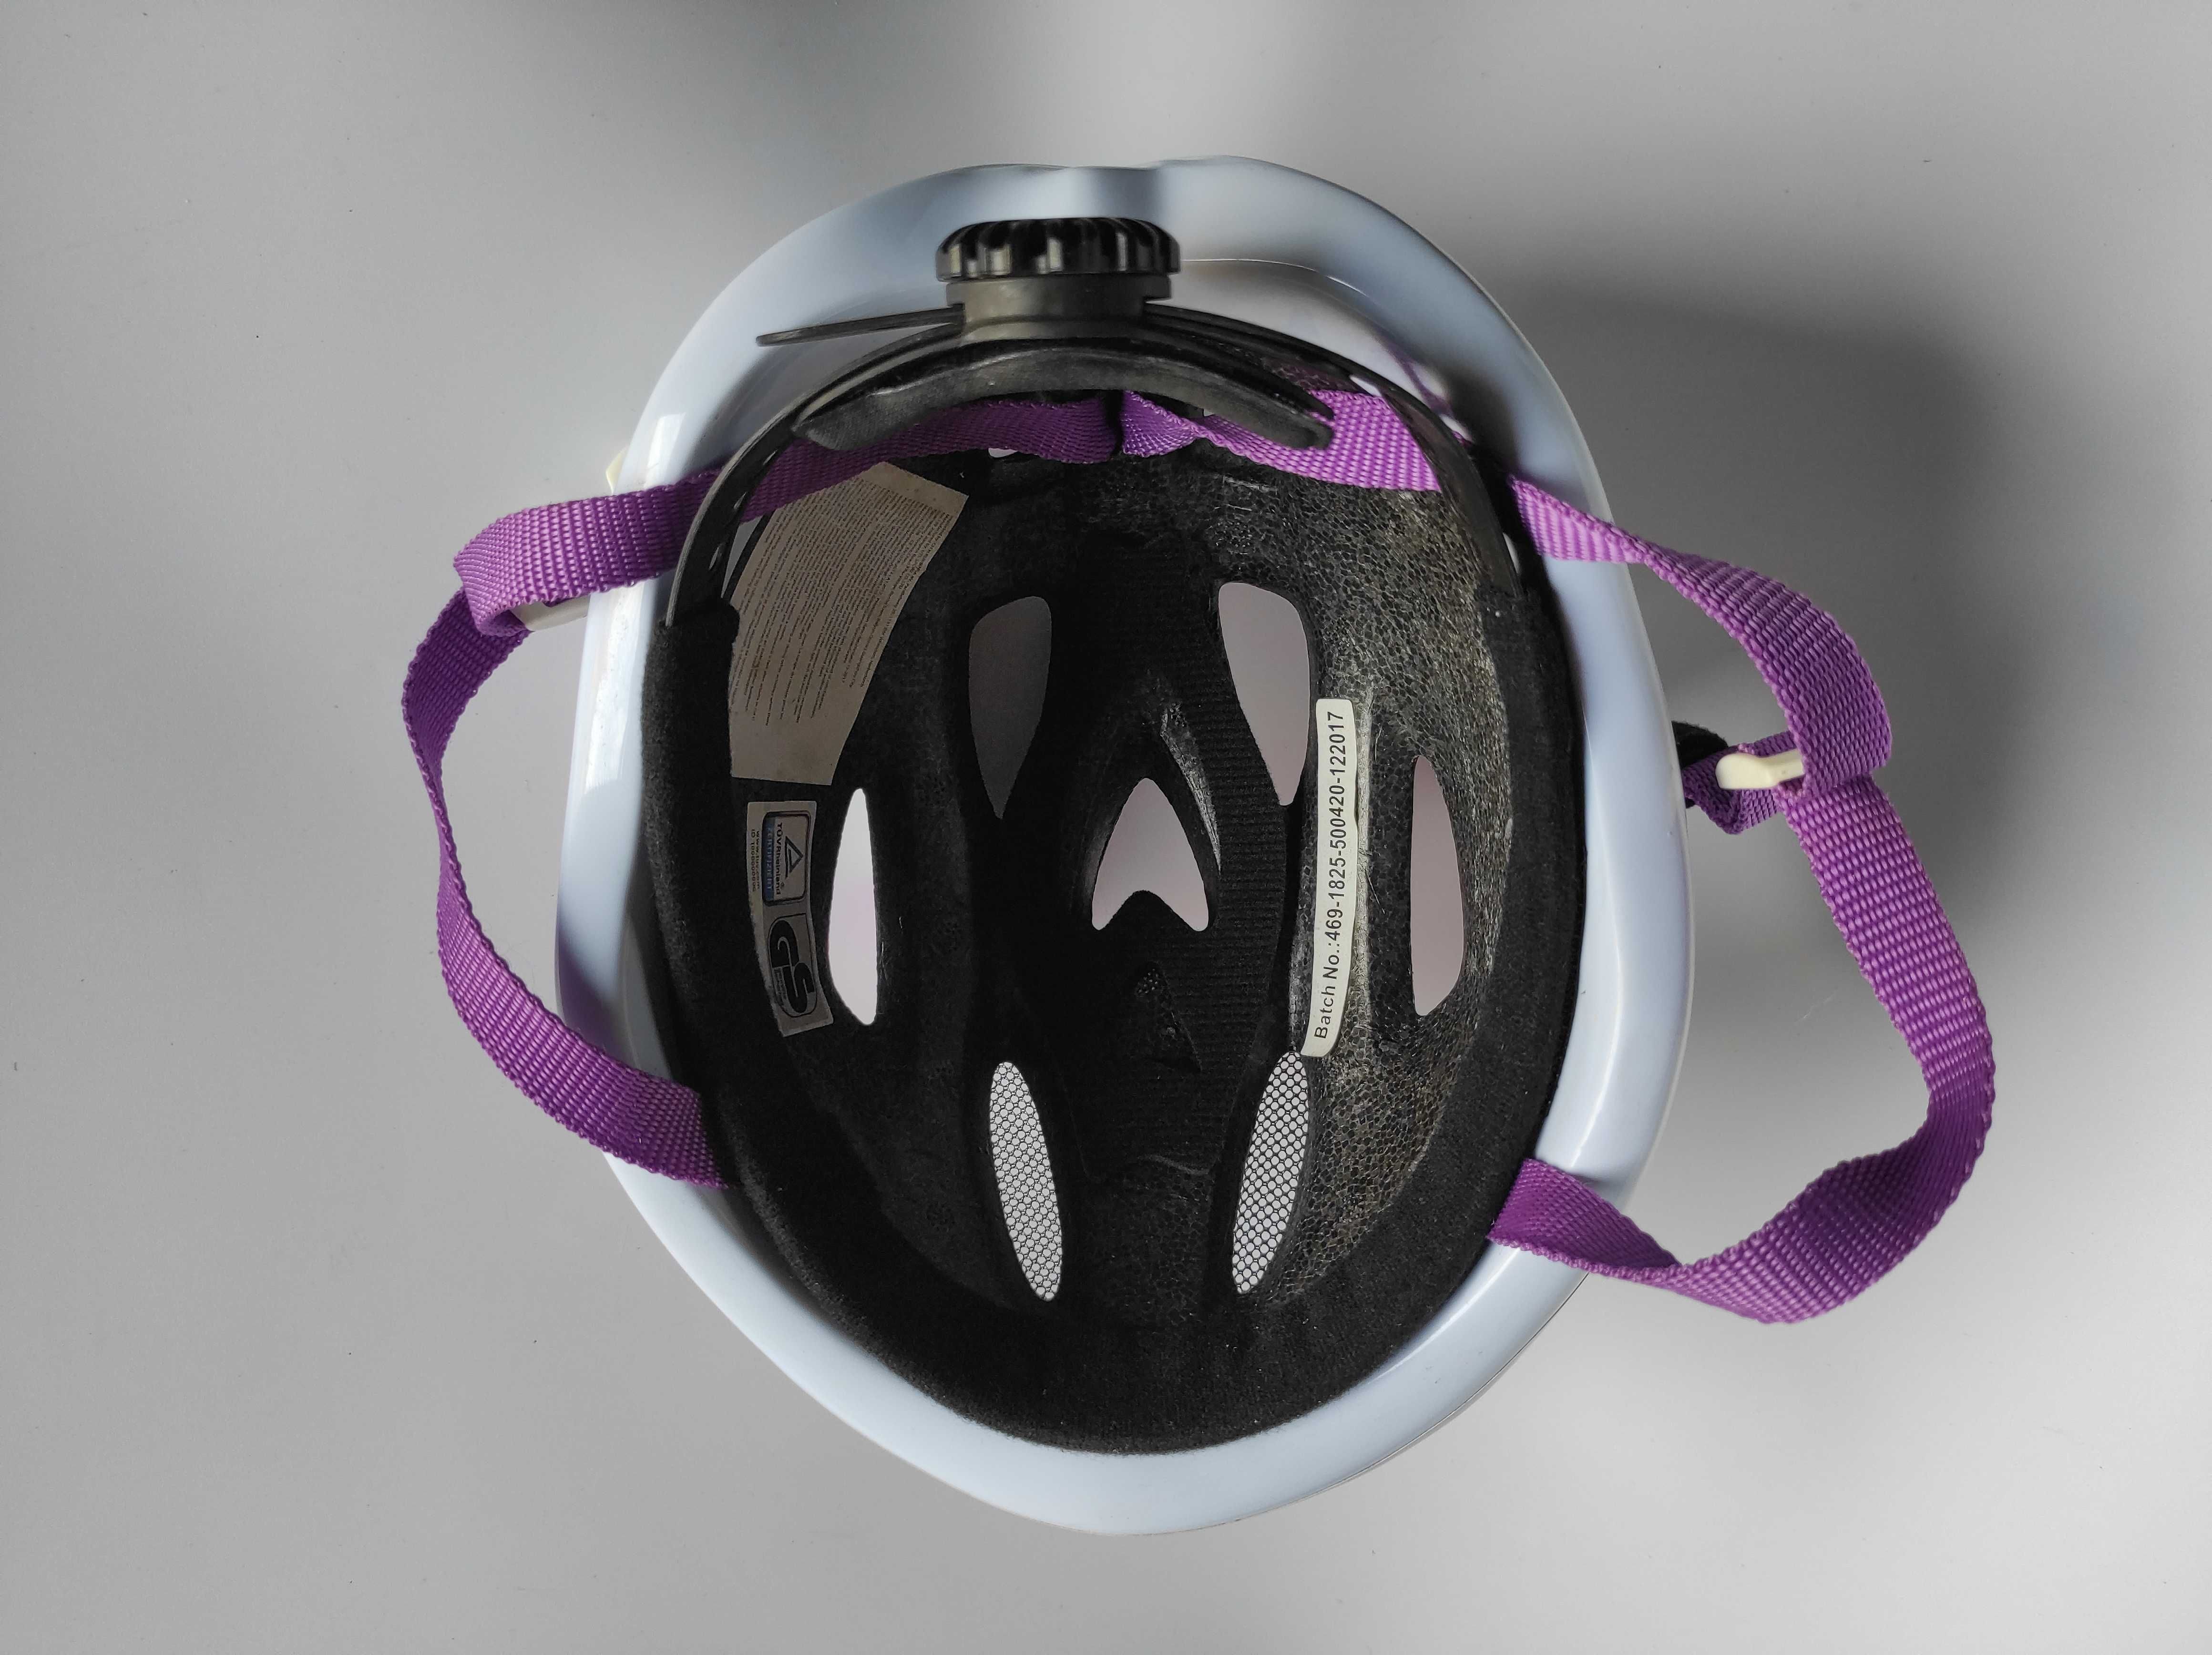 Детский защитный шлем Volare, размер 51-55см, велосипедный.